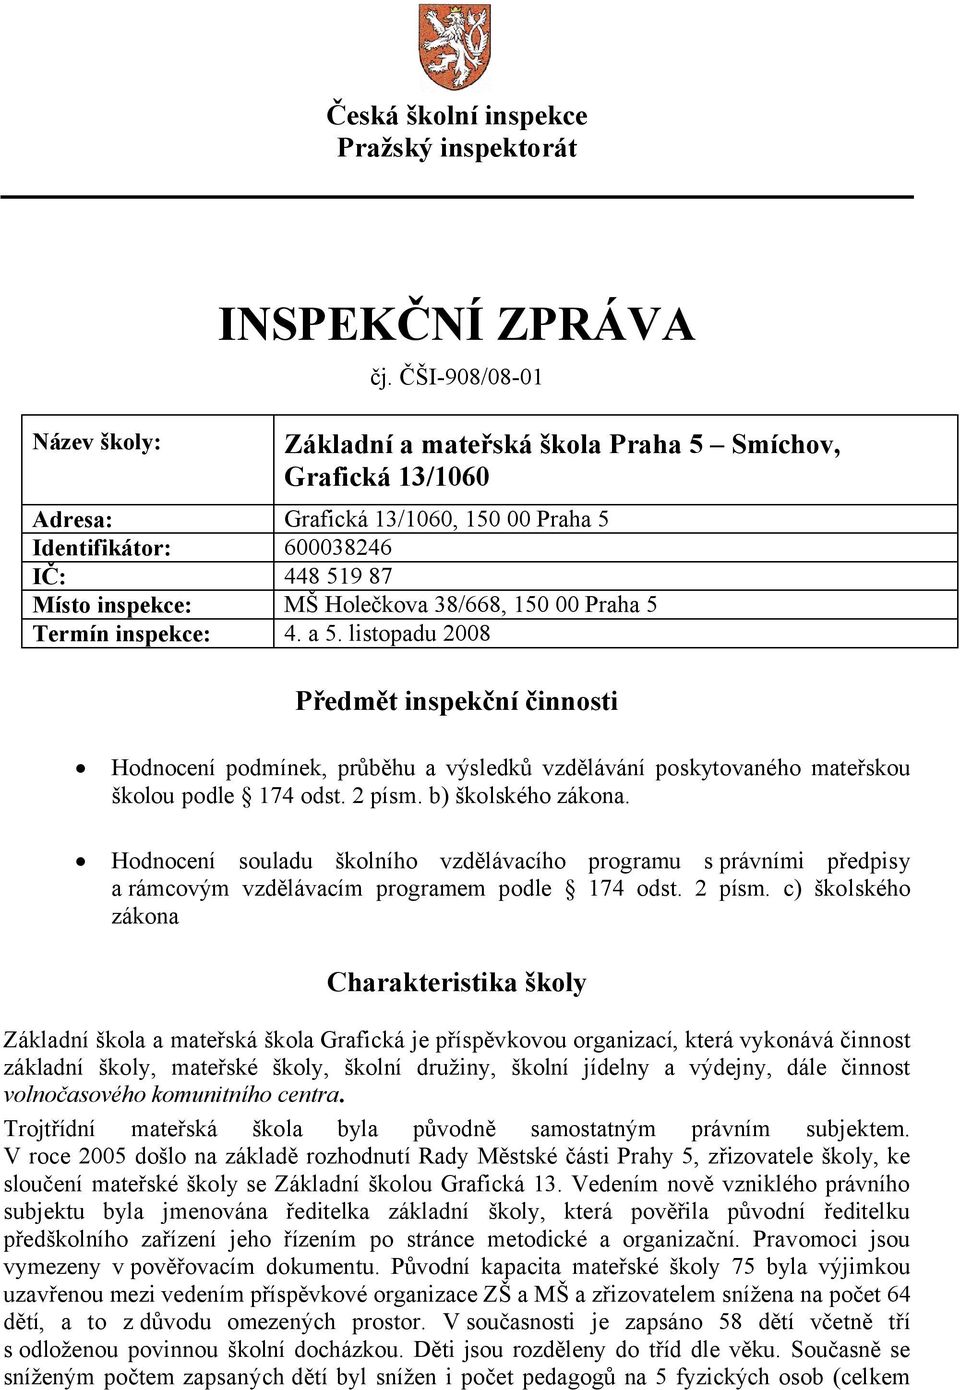 Praha 5 Termín inspekce: 4. a 5. listopadu 2008 Předmět inspekční činnosti Hodnocení podmínek, průběhu a výsledků vzdělávání poskytovaného mateřskou školou podle 174 odst. 2 písm. b) školského zákona.